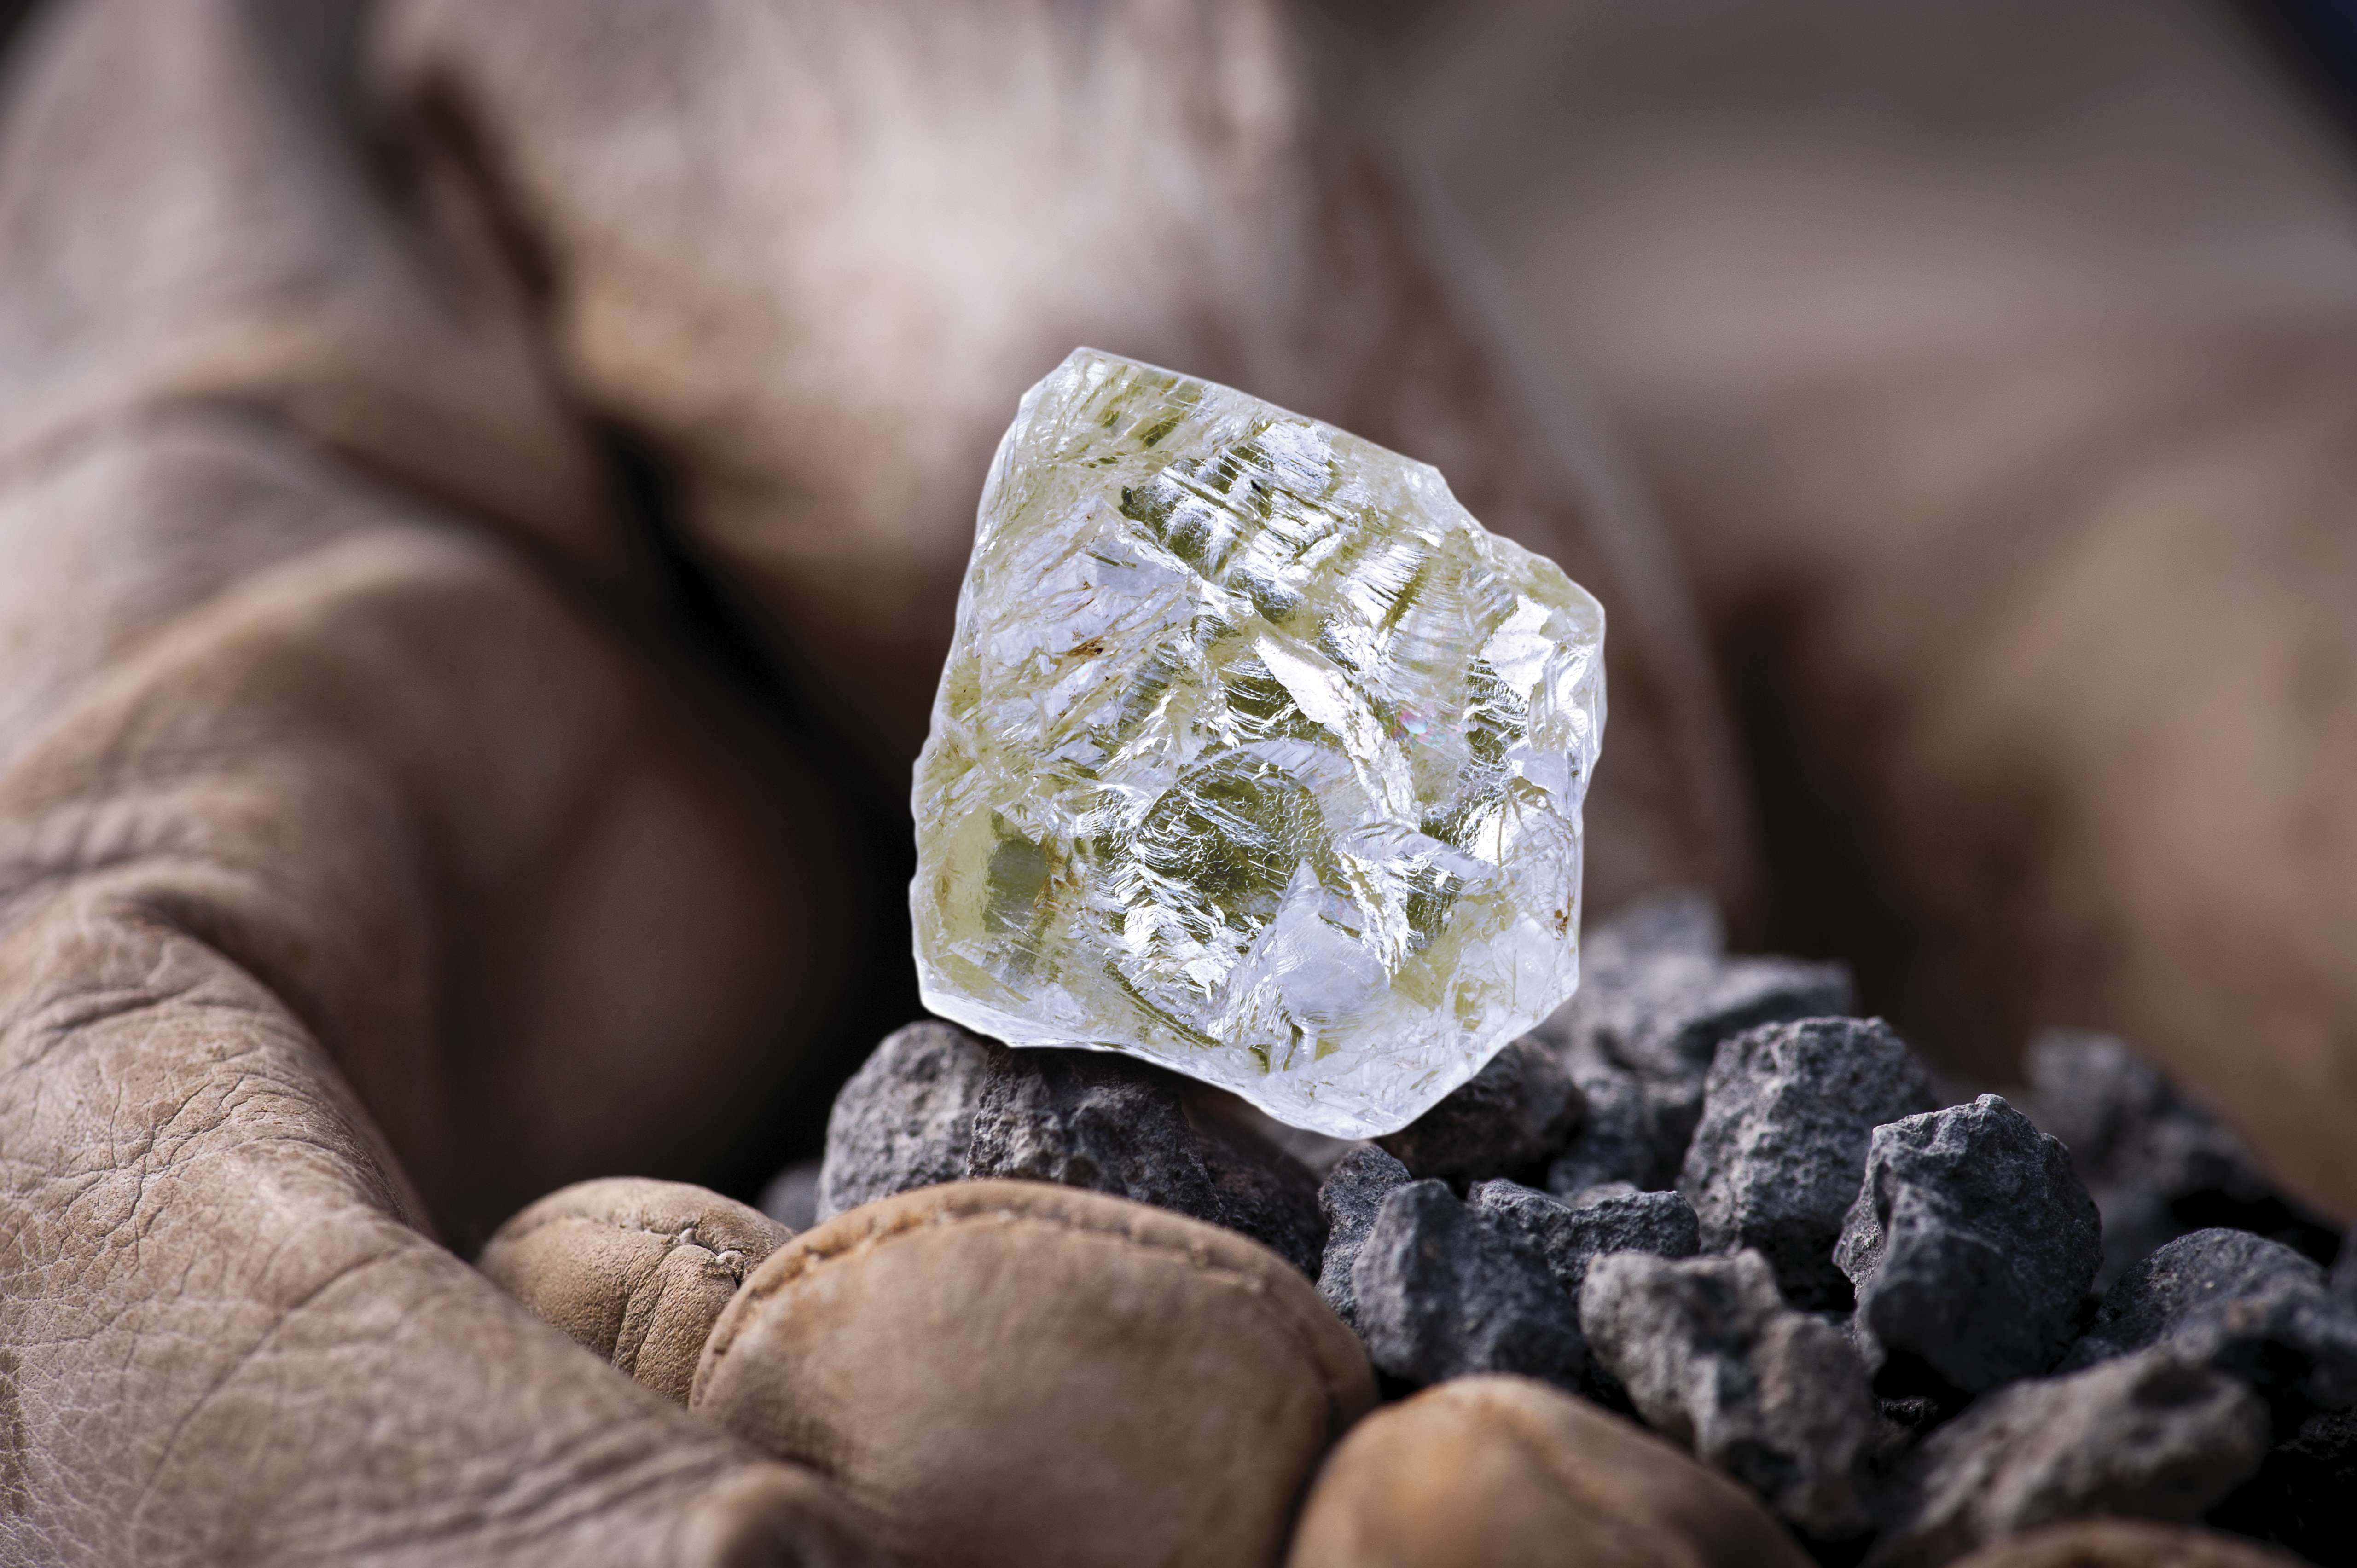 Полезные ископаемые страны канада. Алмаз неограненный камень. Алмаз неограненный камень бриллианты. Камень самородок Алмаз. Алмаз минерал необработанный.